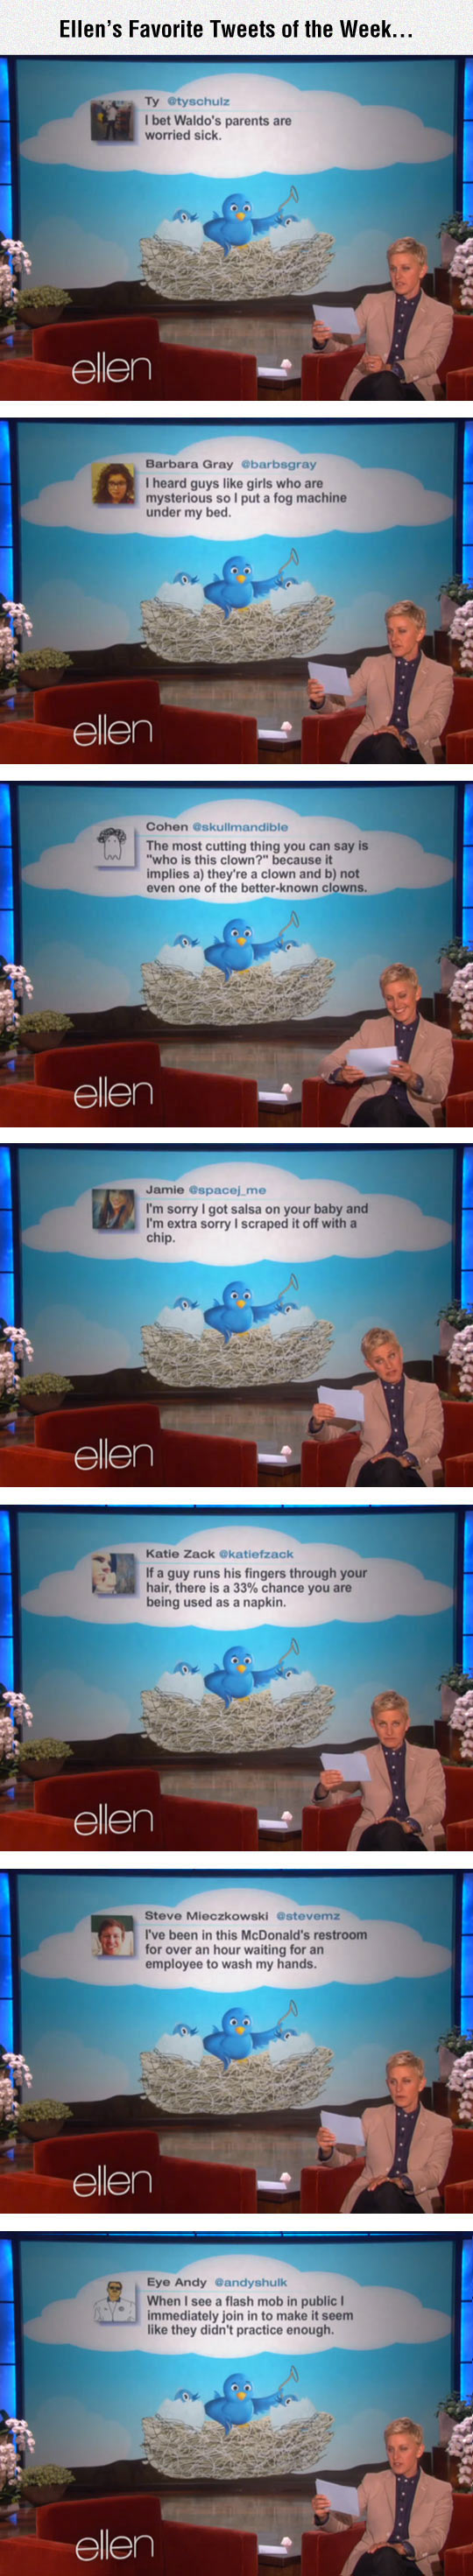 Ellen's favorite Tweets